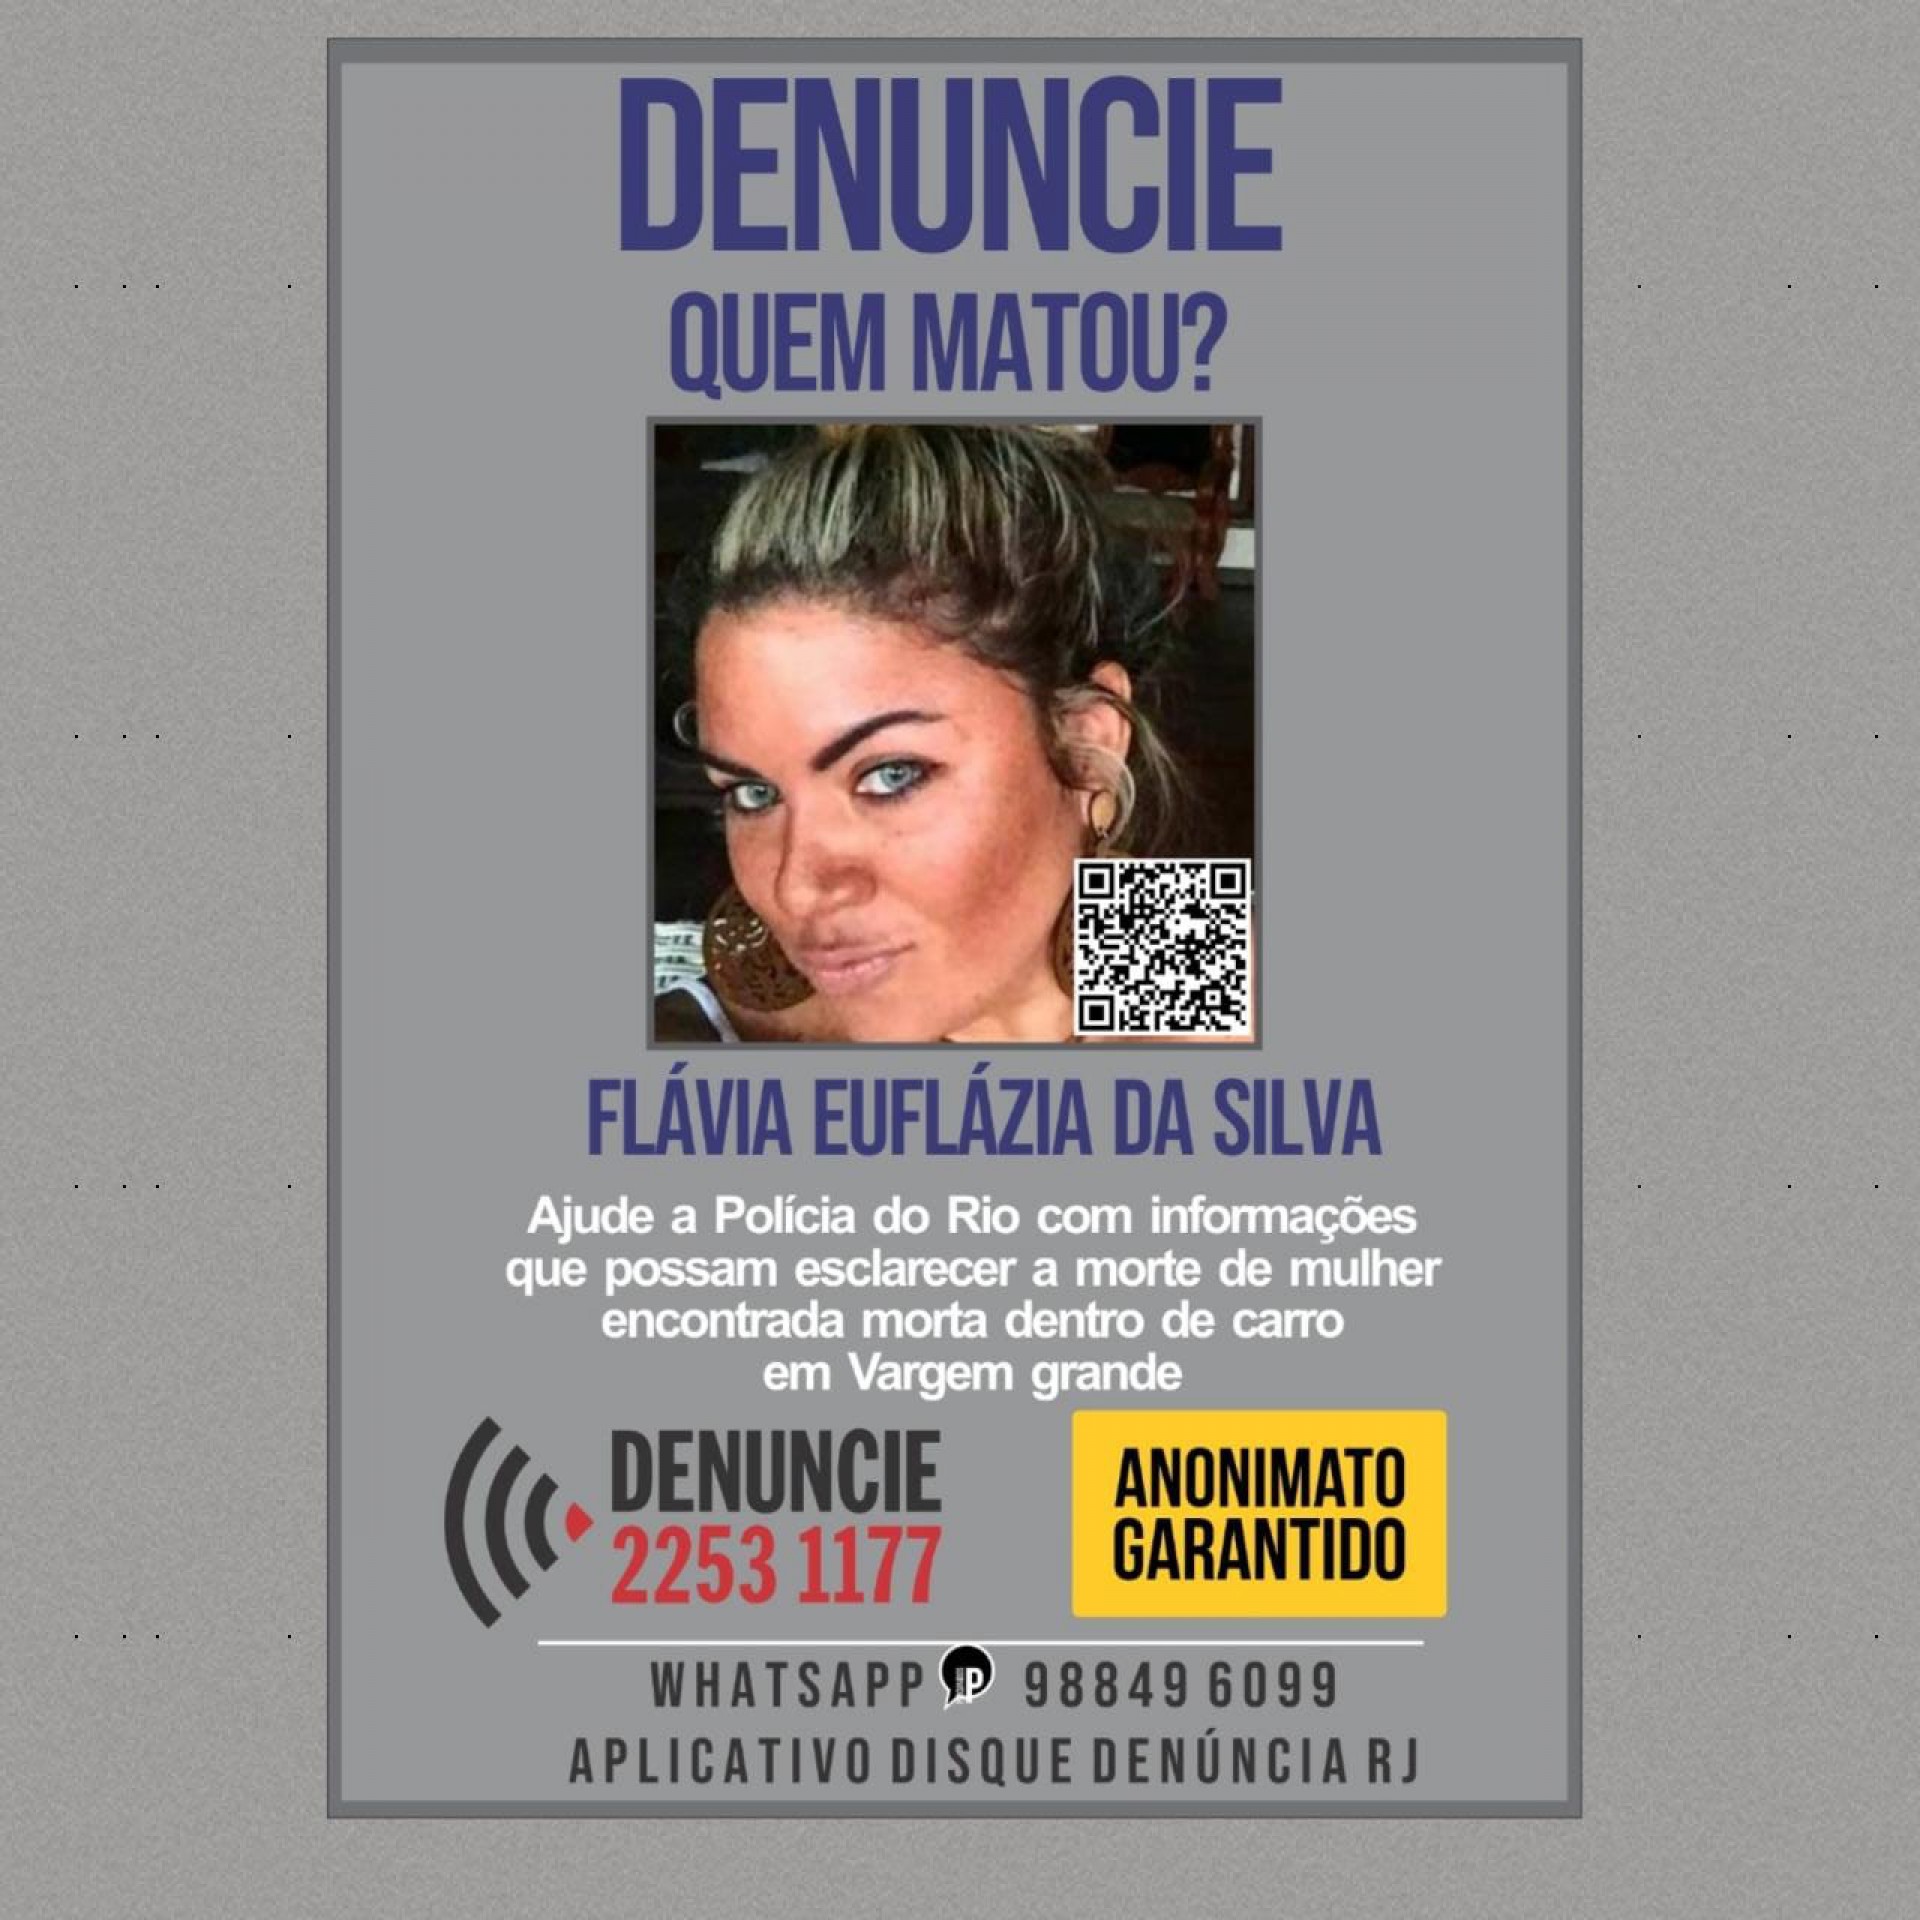 Portal dos Procurados divulga cartaz para encontrar responsáveis pela morte da empresária Flávia Euflázia da Silva  - Divulgação/Portal dos Procurados